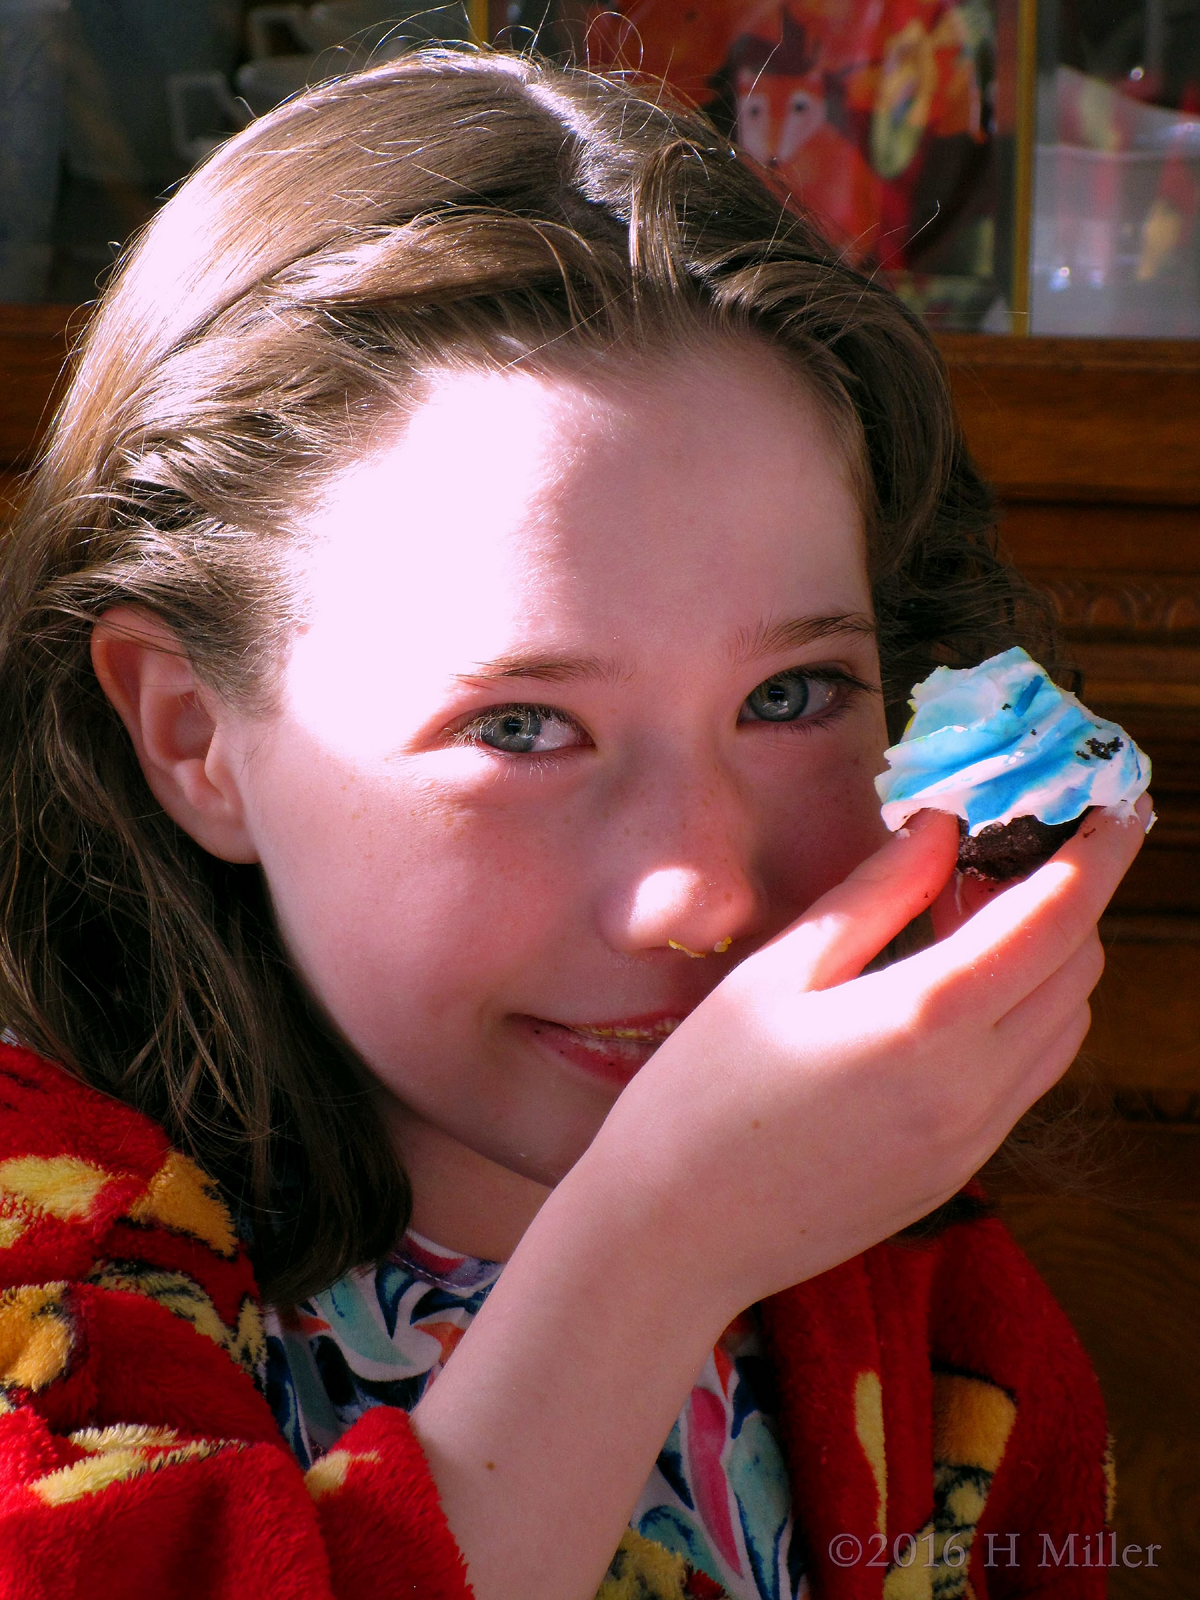 Spa Party Brithday Girl Eating A Cupcake